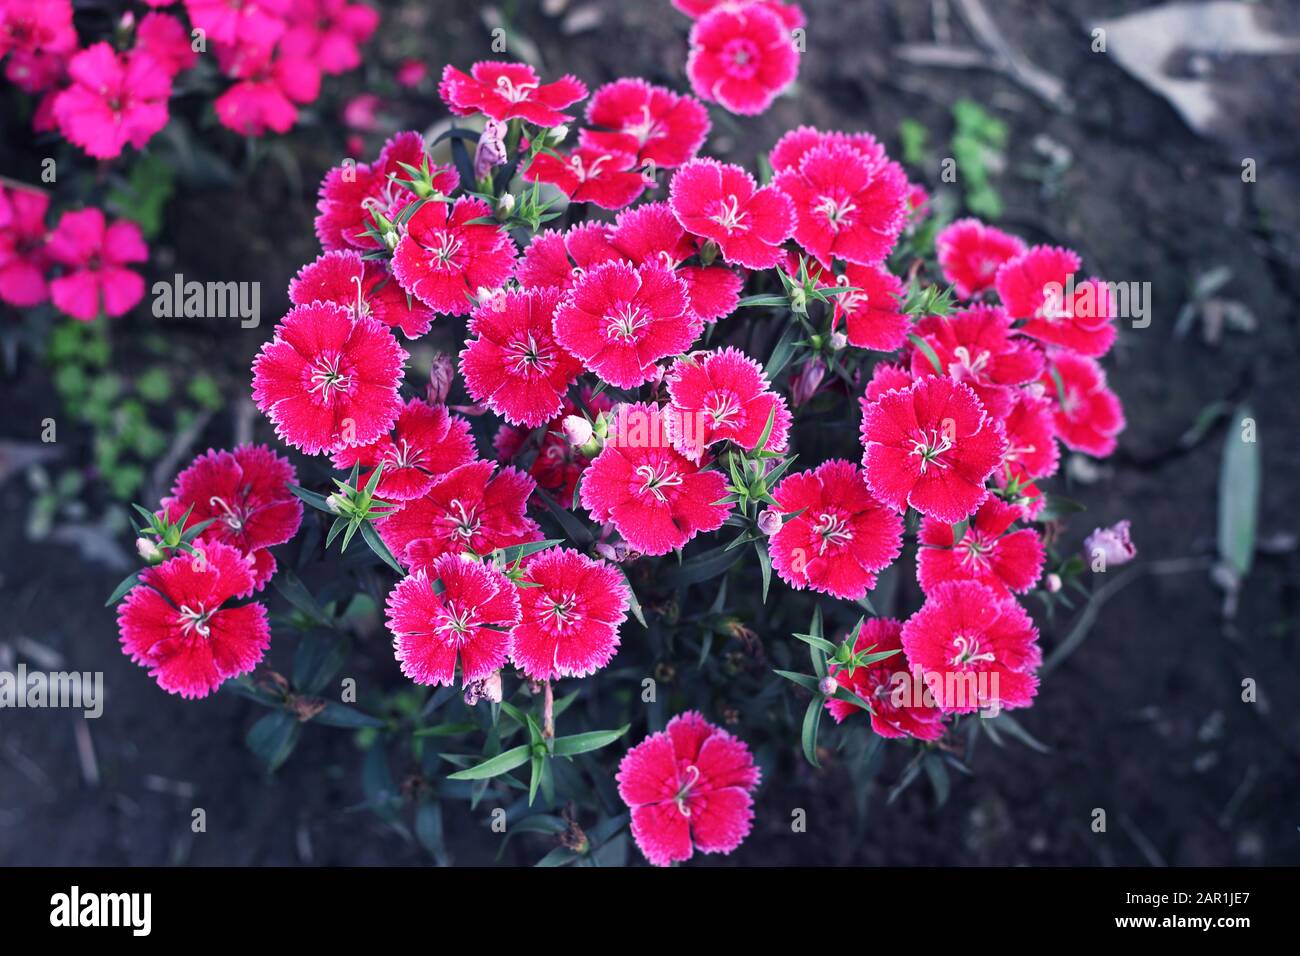 Rosa e bianco fiore gillyflower garofano flowers.gillyflower è la garofano o una pianta simile del genere Dianthus.Bright rosso selvaggio Dianthus b Foto Stock